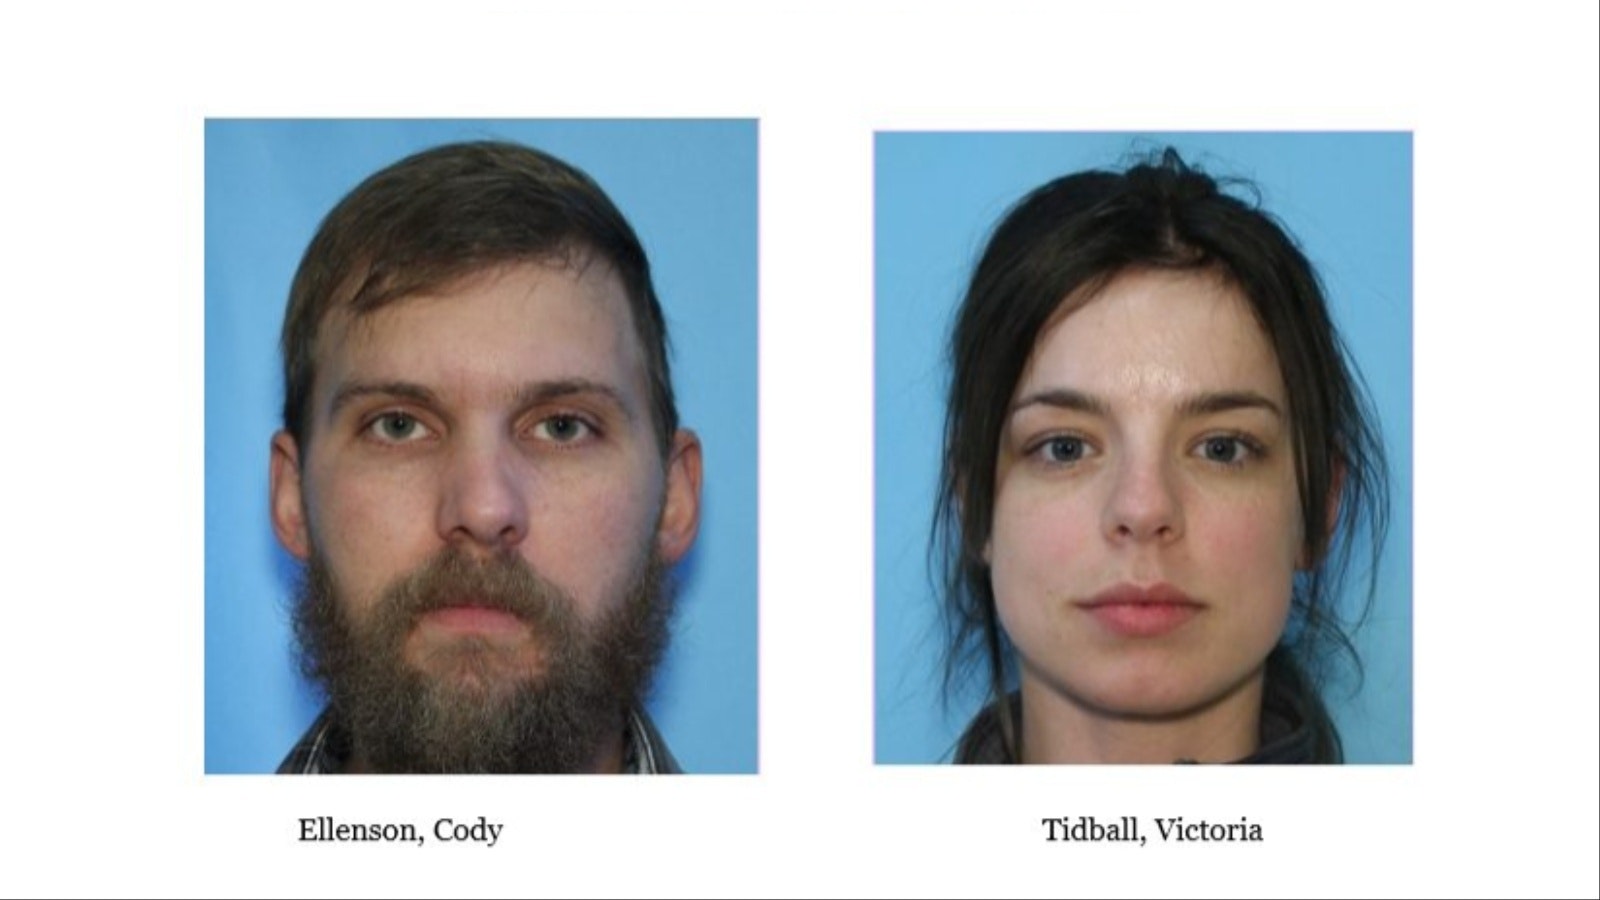 Cody Ellenson was still at large Thursday, though Nebraska police apprehended Victoria Tidball last week.